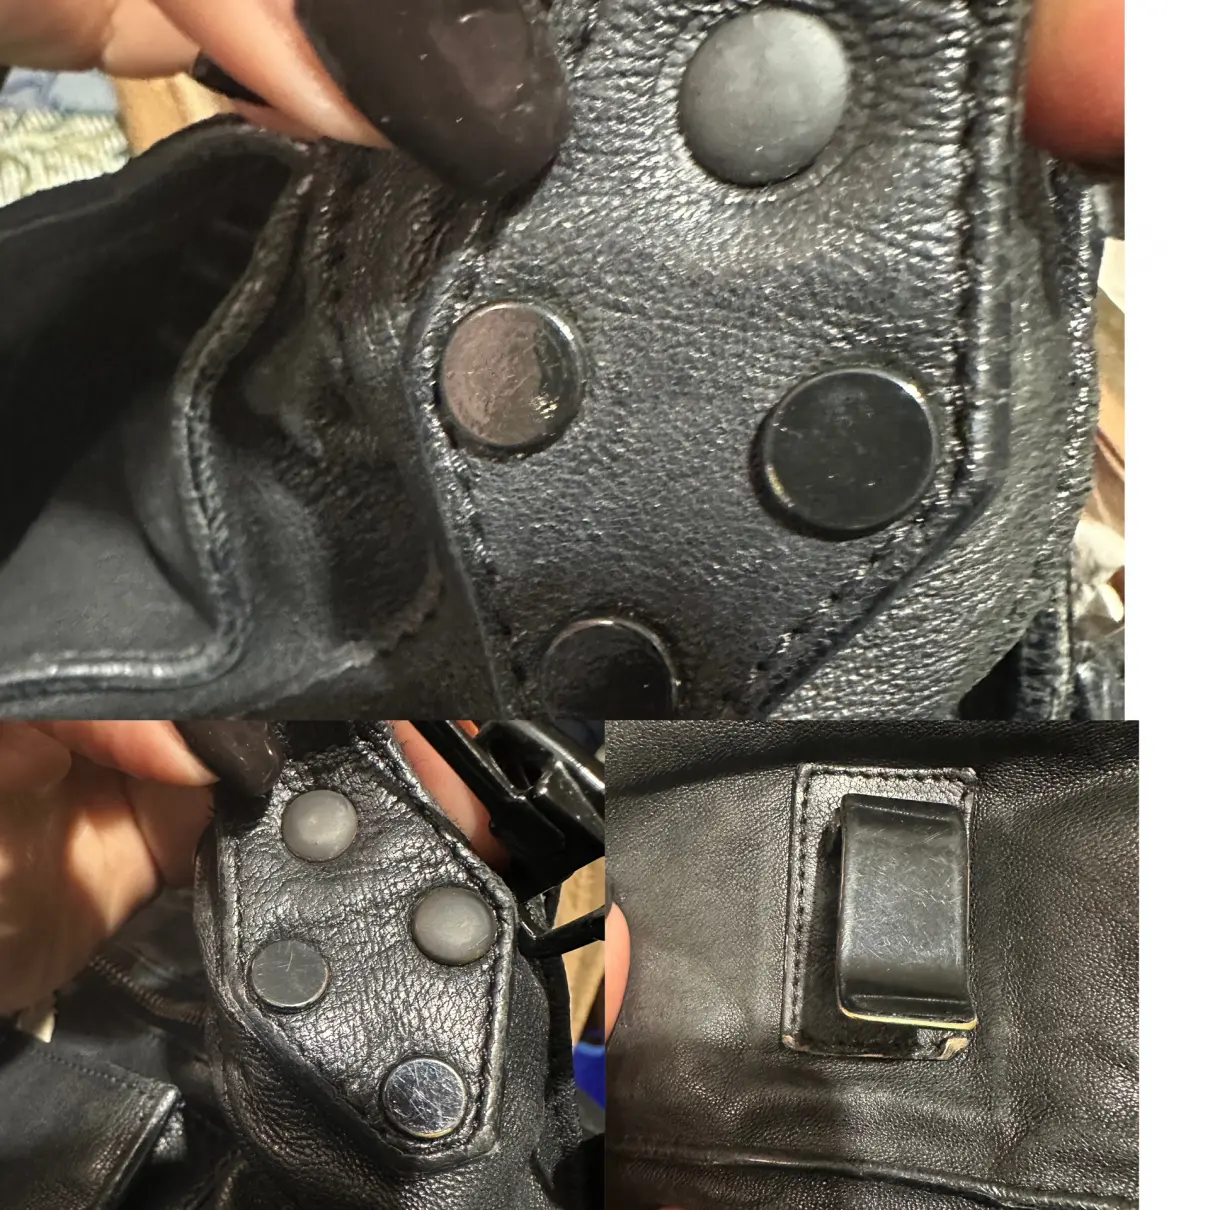 Buy Proenza Schouler PS1 Large leather handbag online